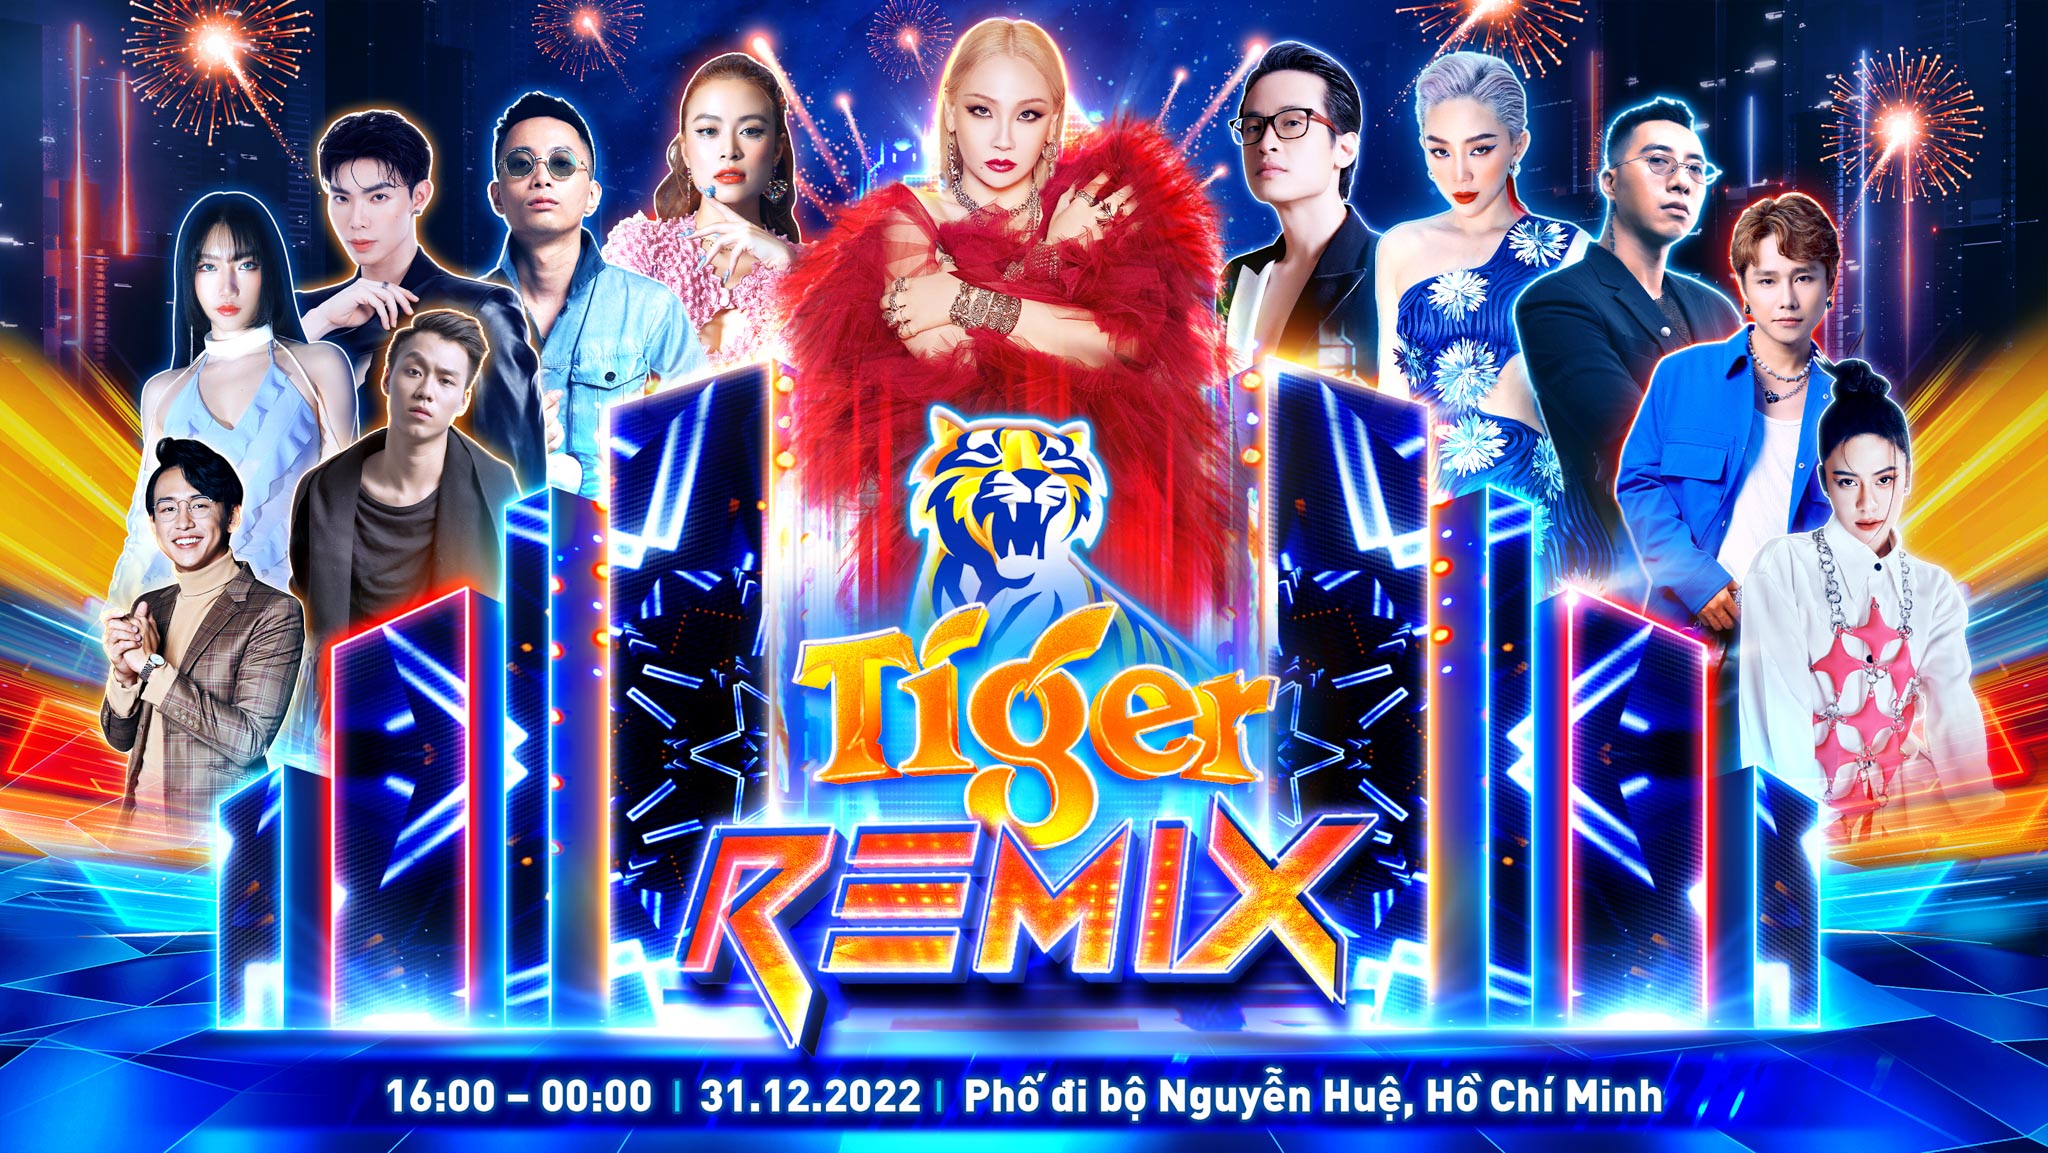 CL – Nghệ sĩ hàng đầu Châu Á sẽ trình diễn tại Đại nhạc hội TIGER REMIX 2023 TP. Hồ Chí Minh